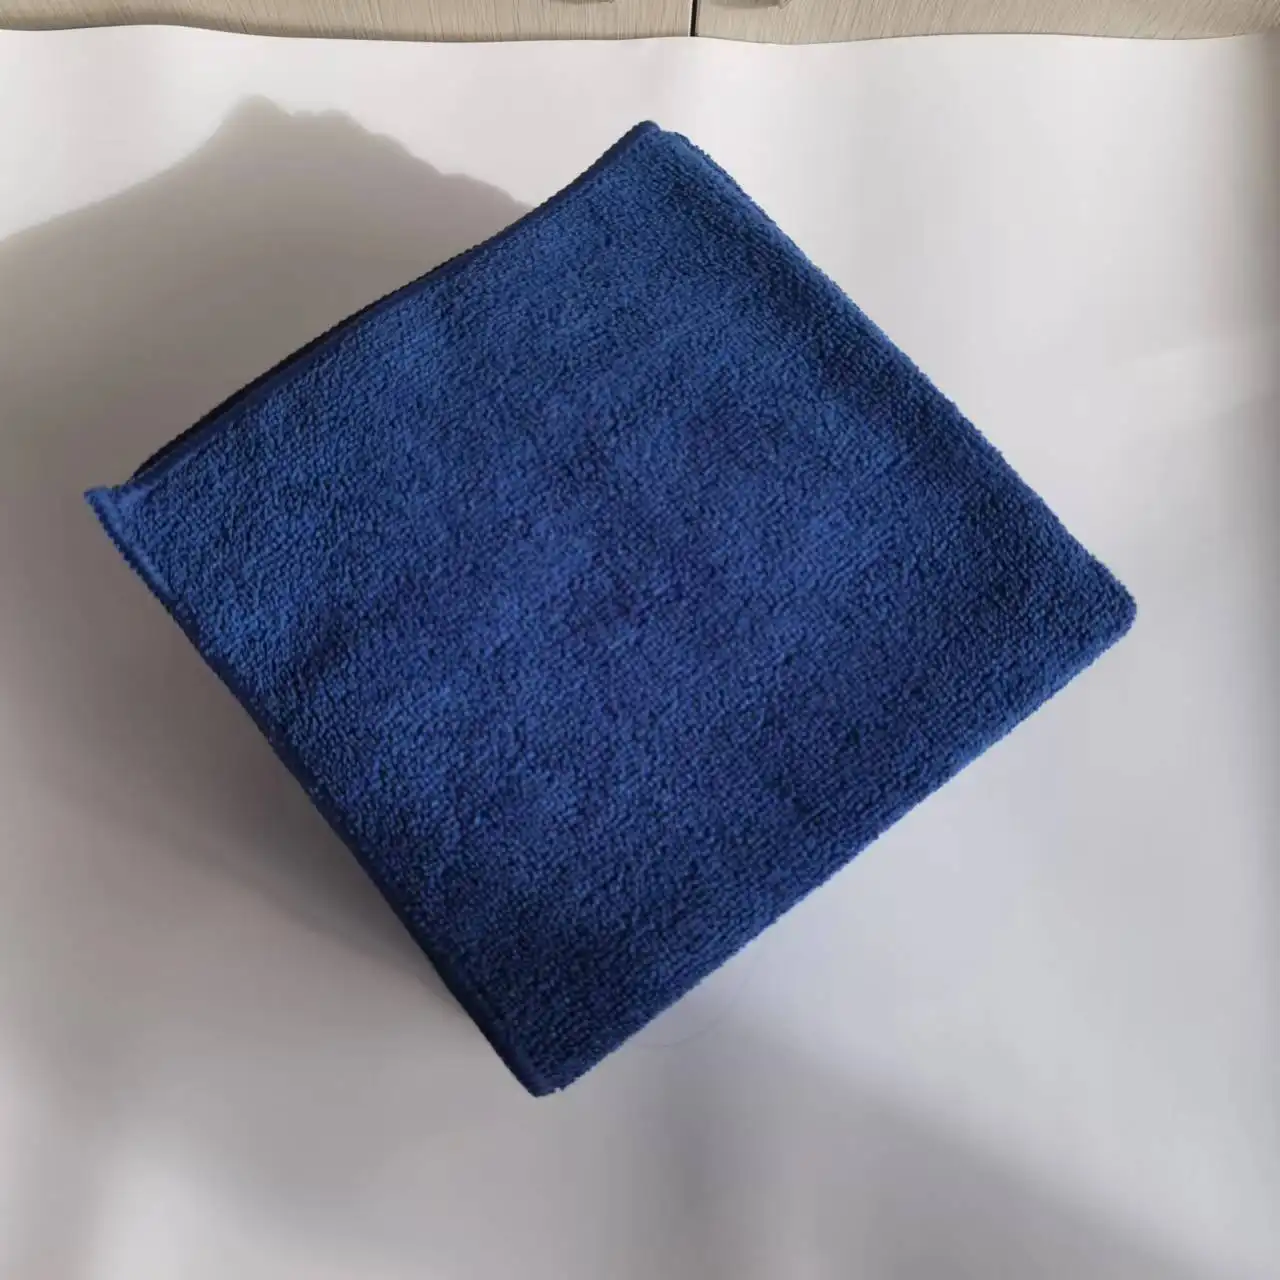 Greedfind serviette de nettoyage en microfibre 40*40 marine, chiffon de nettoyage pour l'industrie domestique, marchandise prête à l'emploi, absorbante, lavage rapide pour restaurant